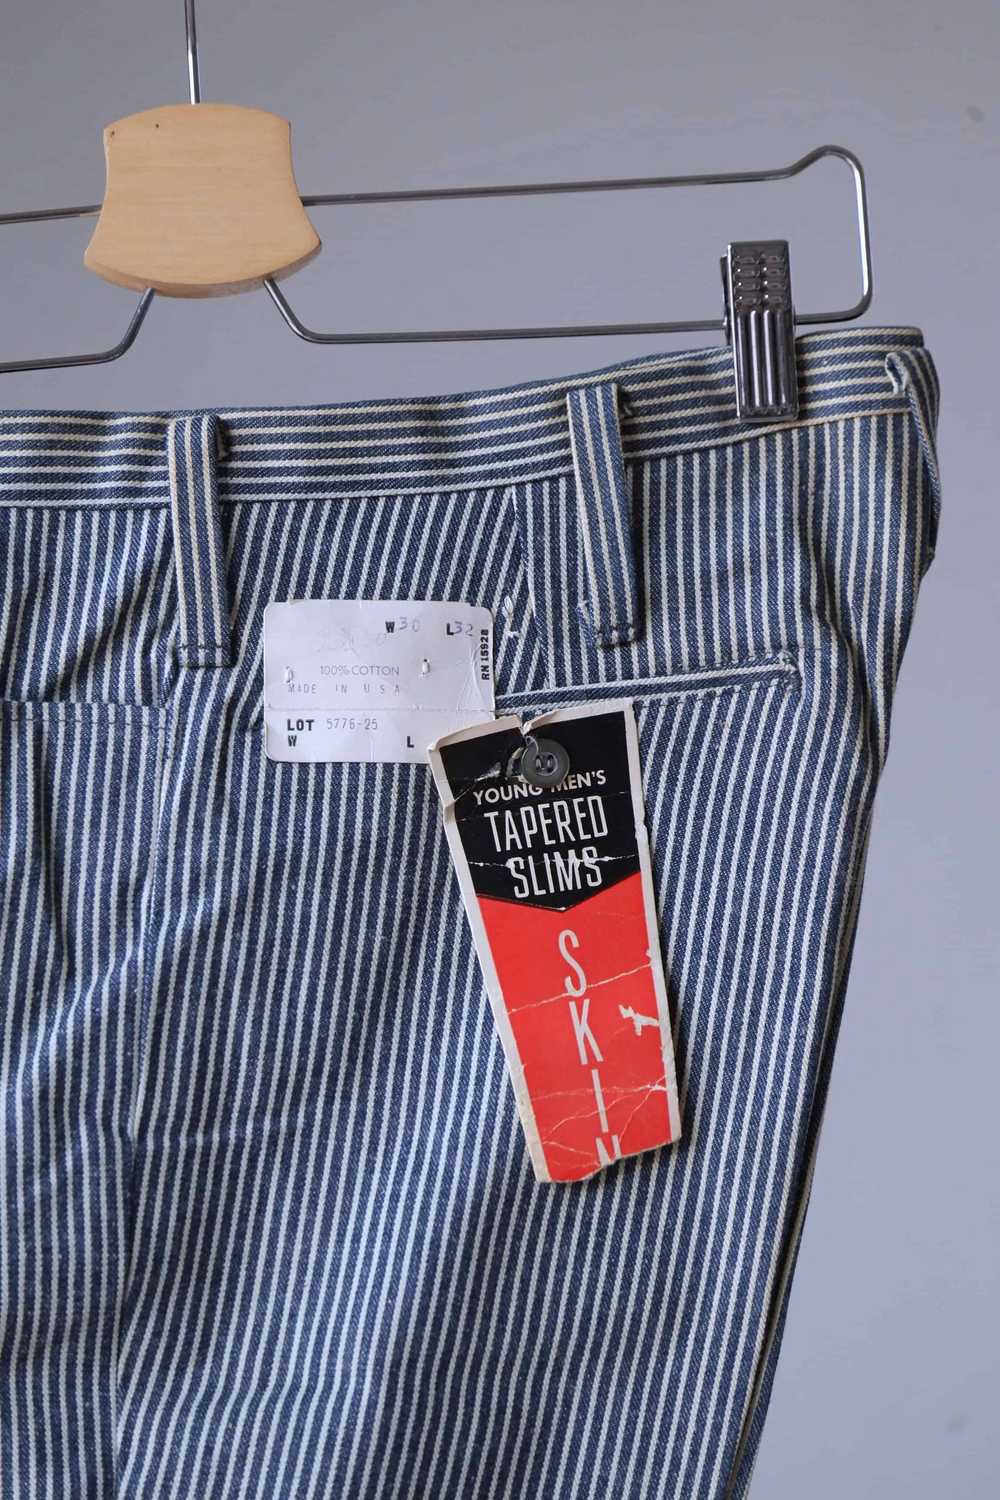 LEE 60's Vintage Tapered Slim Pants - image 3